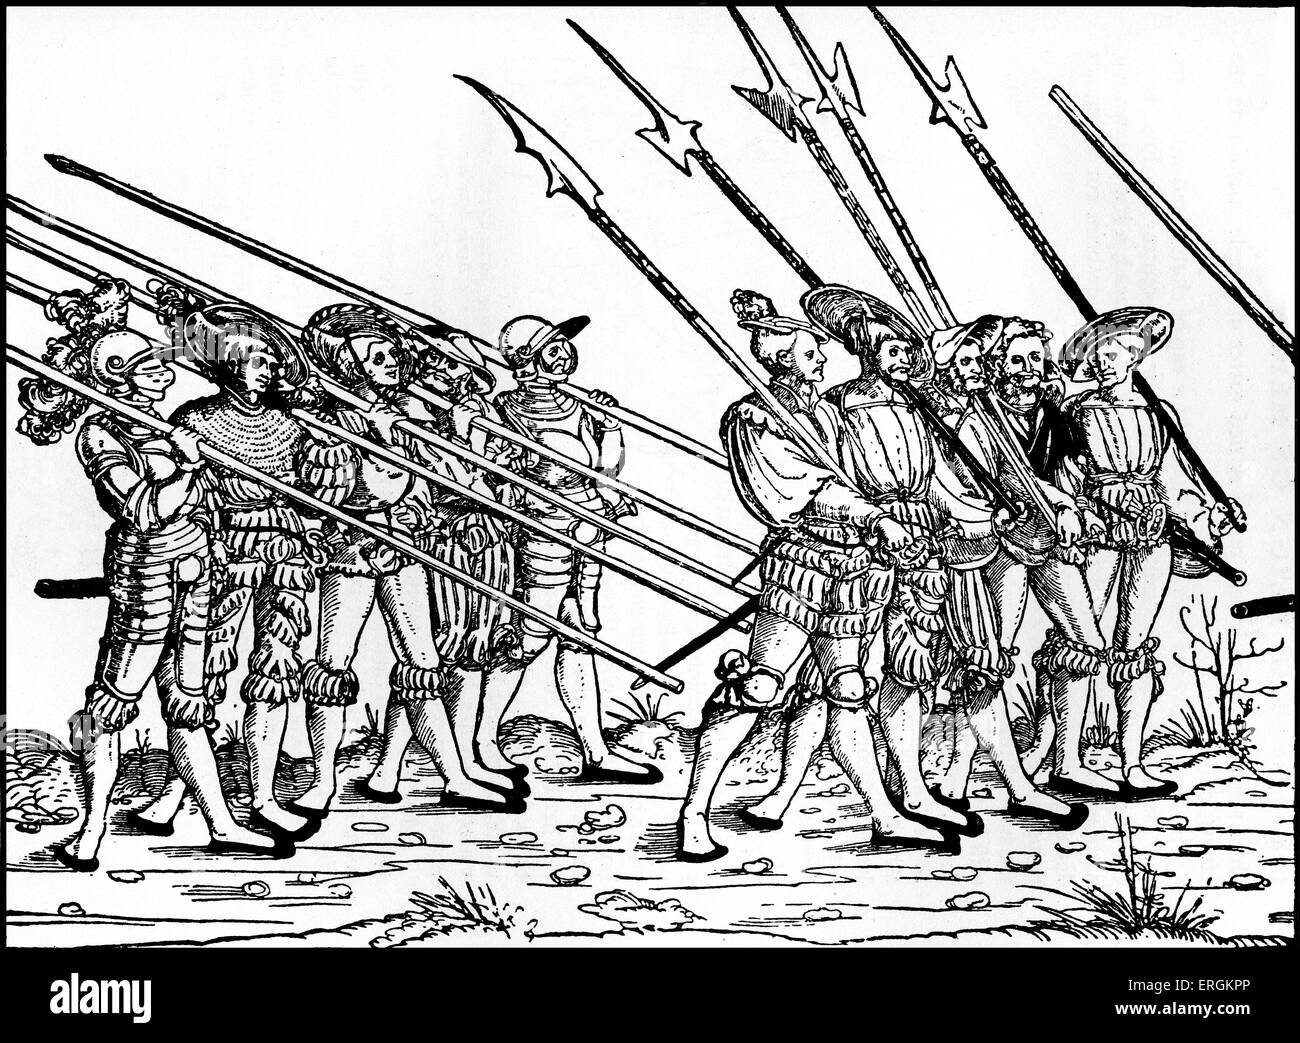 Un groupe de soldats mercenaires allemands- landsknechten au début du 16ème siècle. Après l'original par Herbert Norris artiste est mort 1950 - peut exiger l'affranchissement des droits Banque D'Images